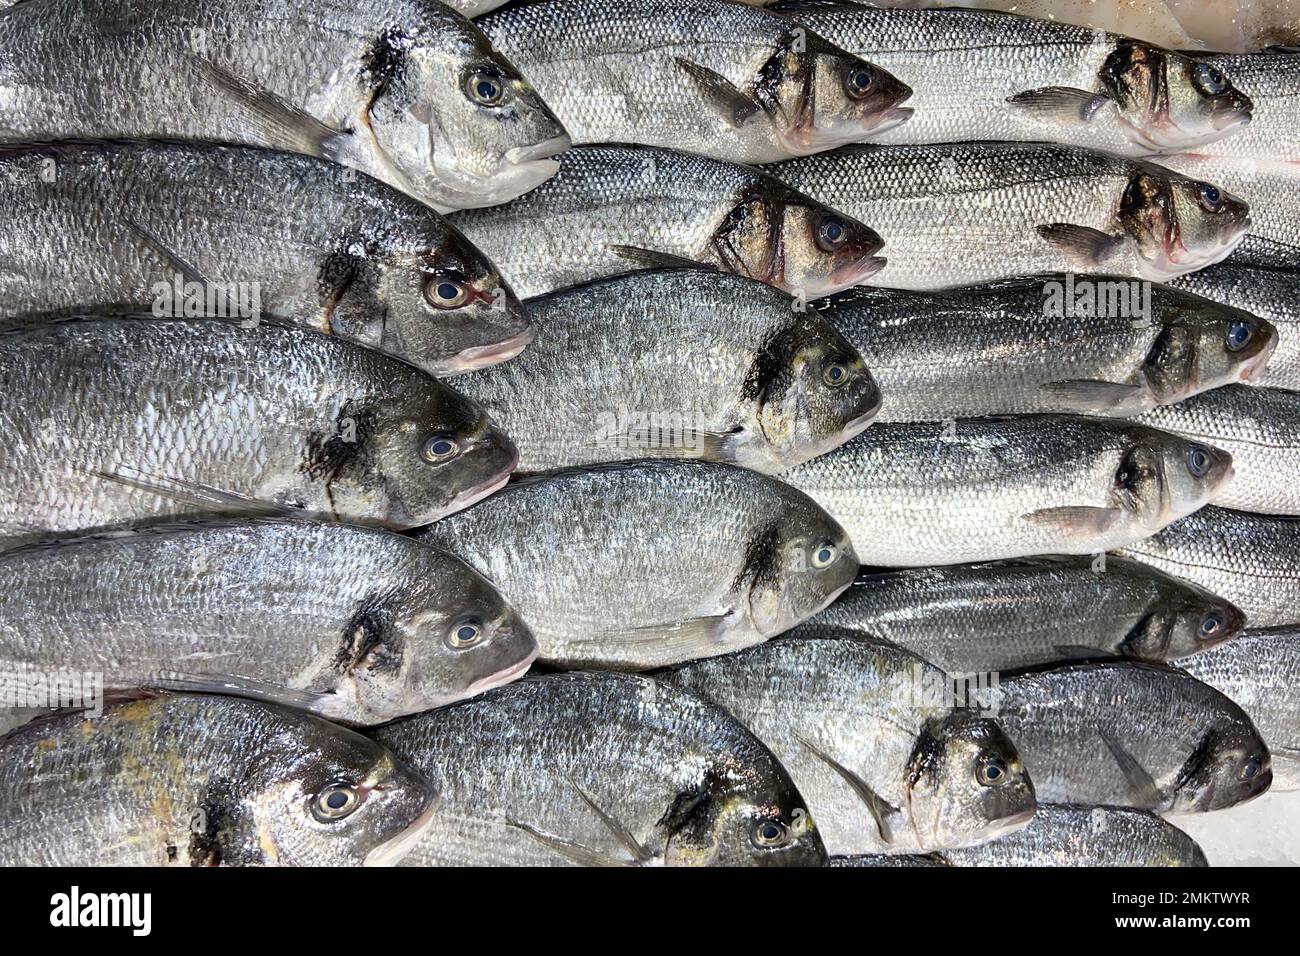 Dentici fishes (common dentex) at an Italian market Stock Photo